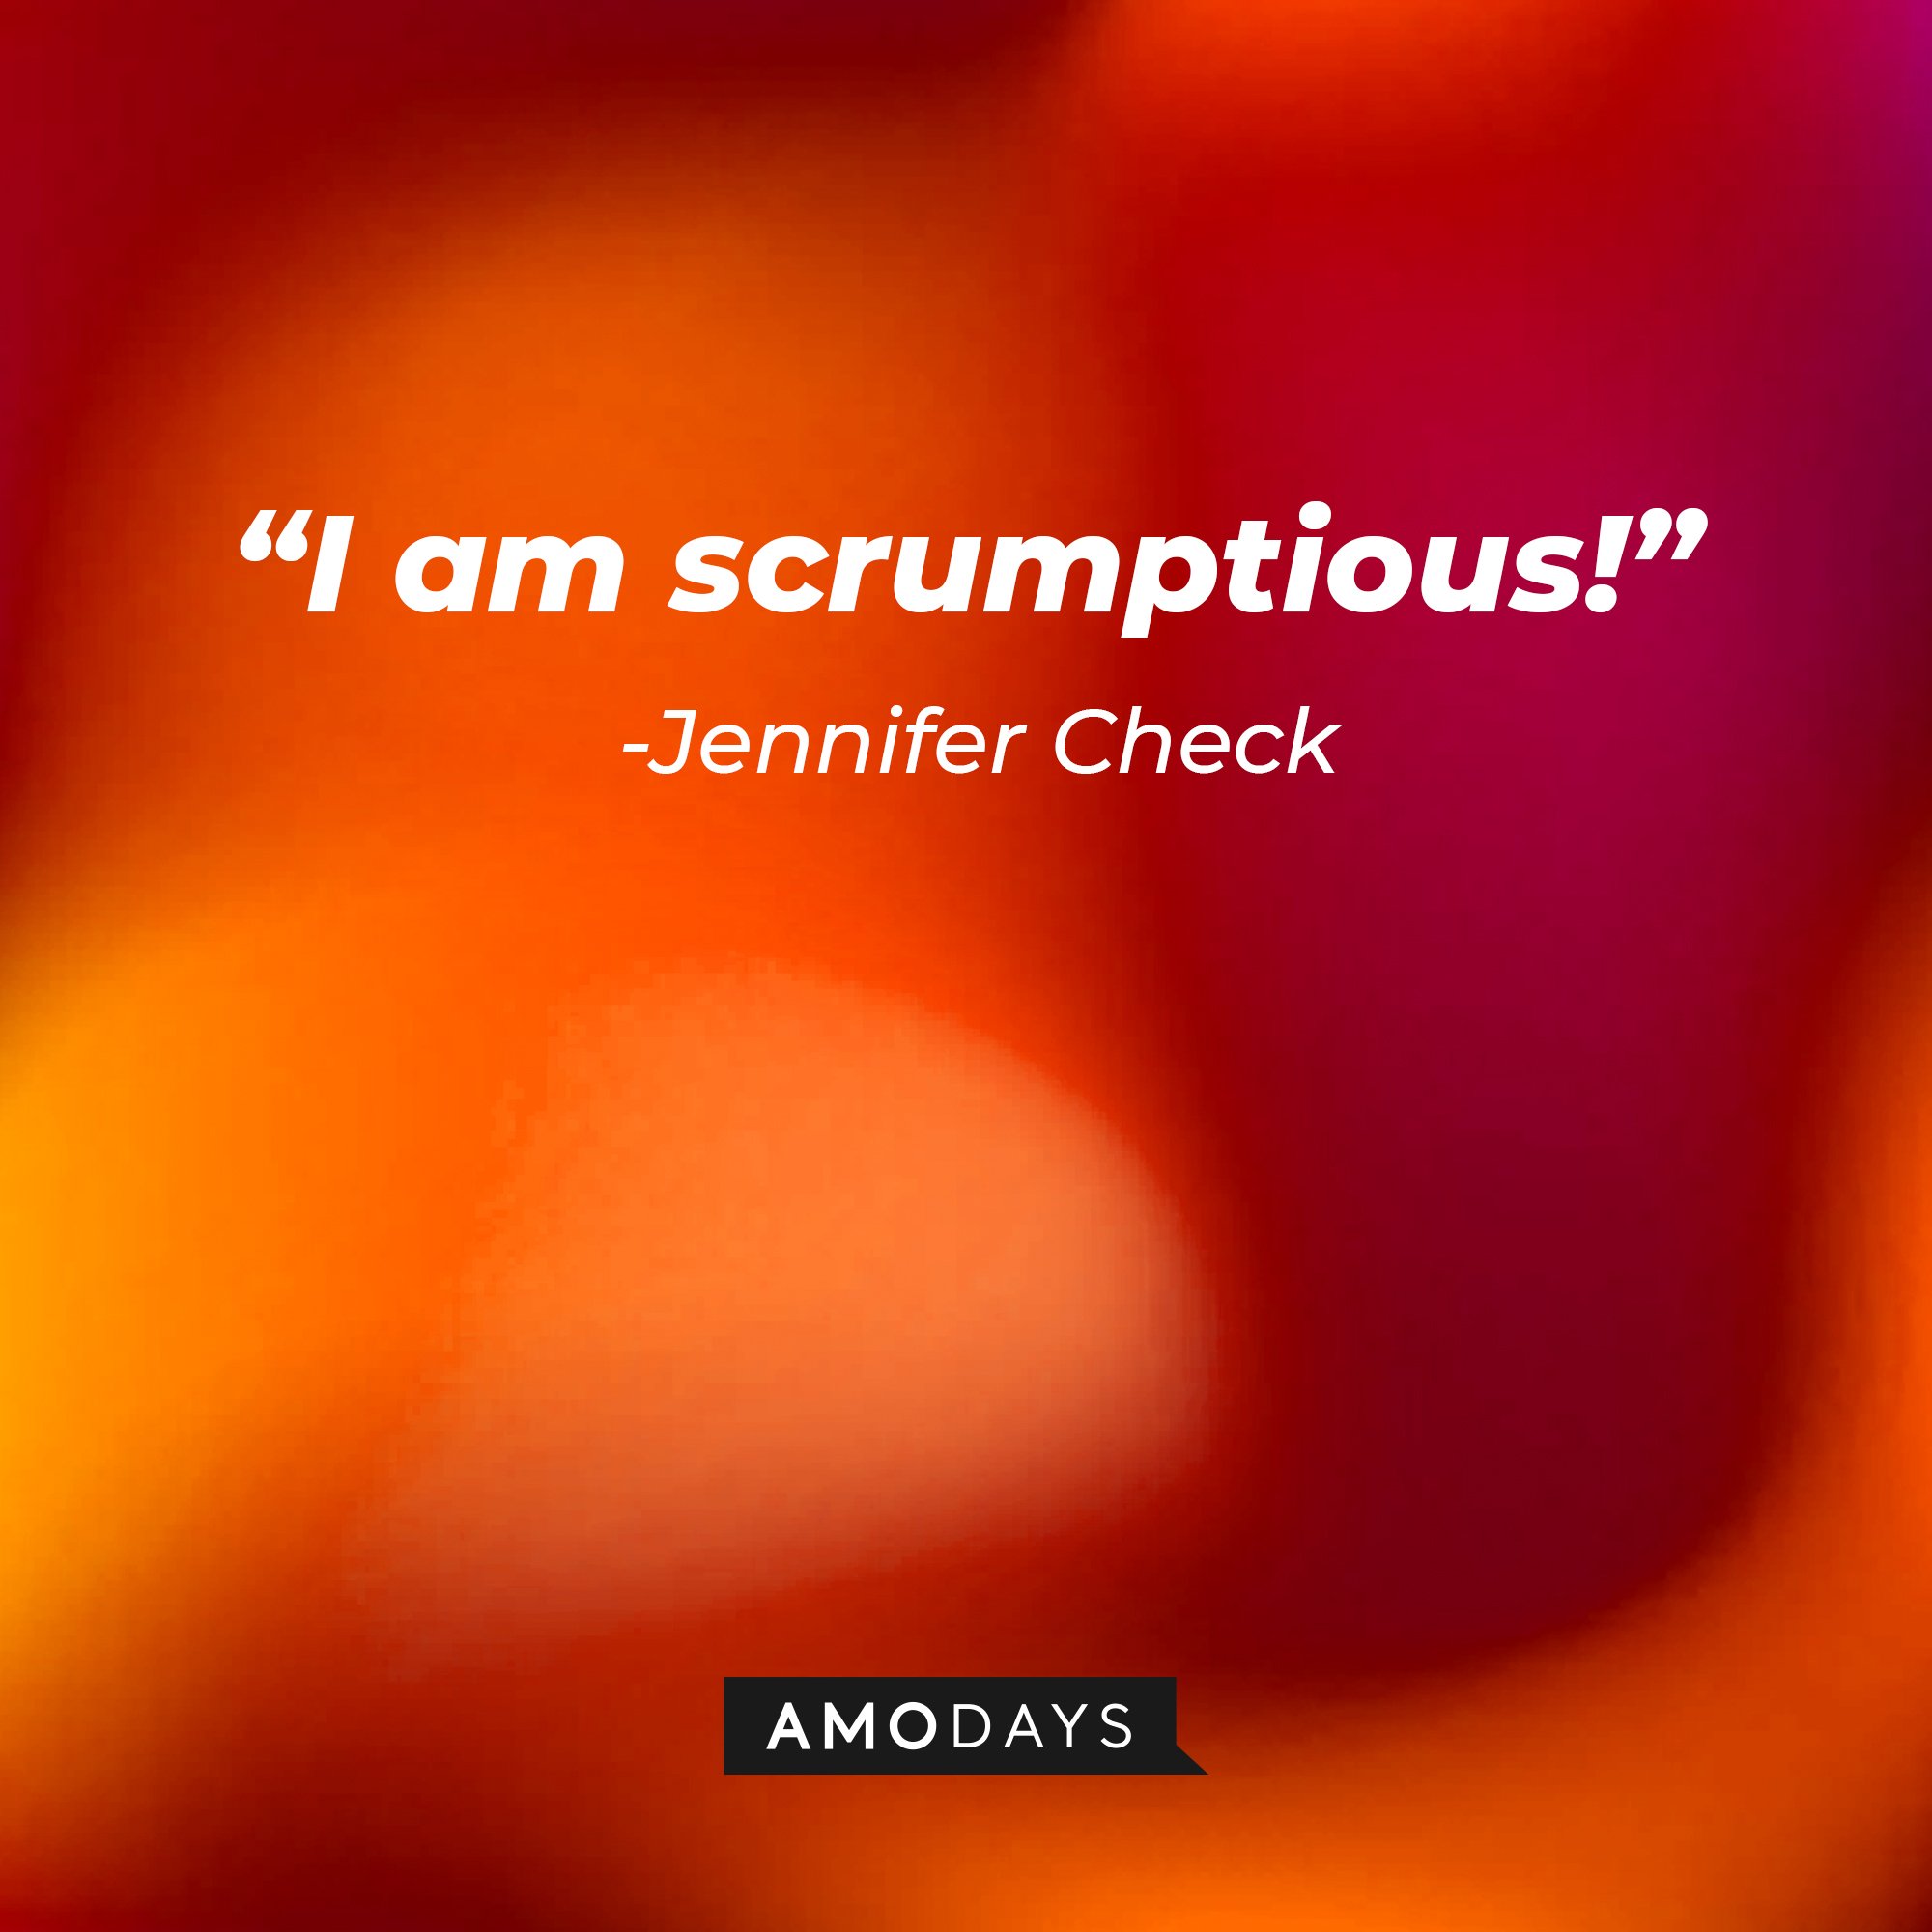 Jennifer Check’s quote: “I am scrumptious!” | Image: AmoDays